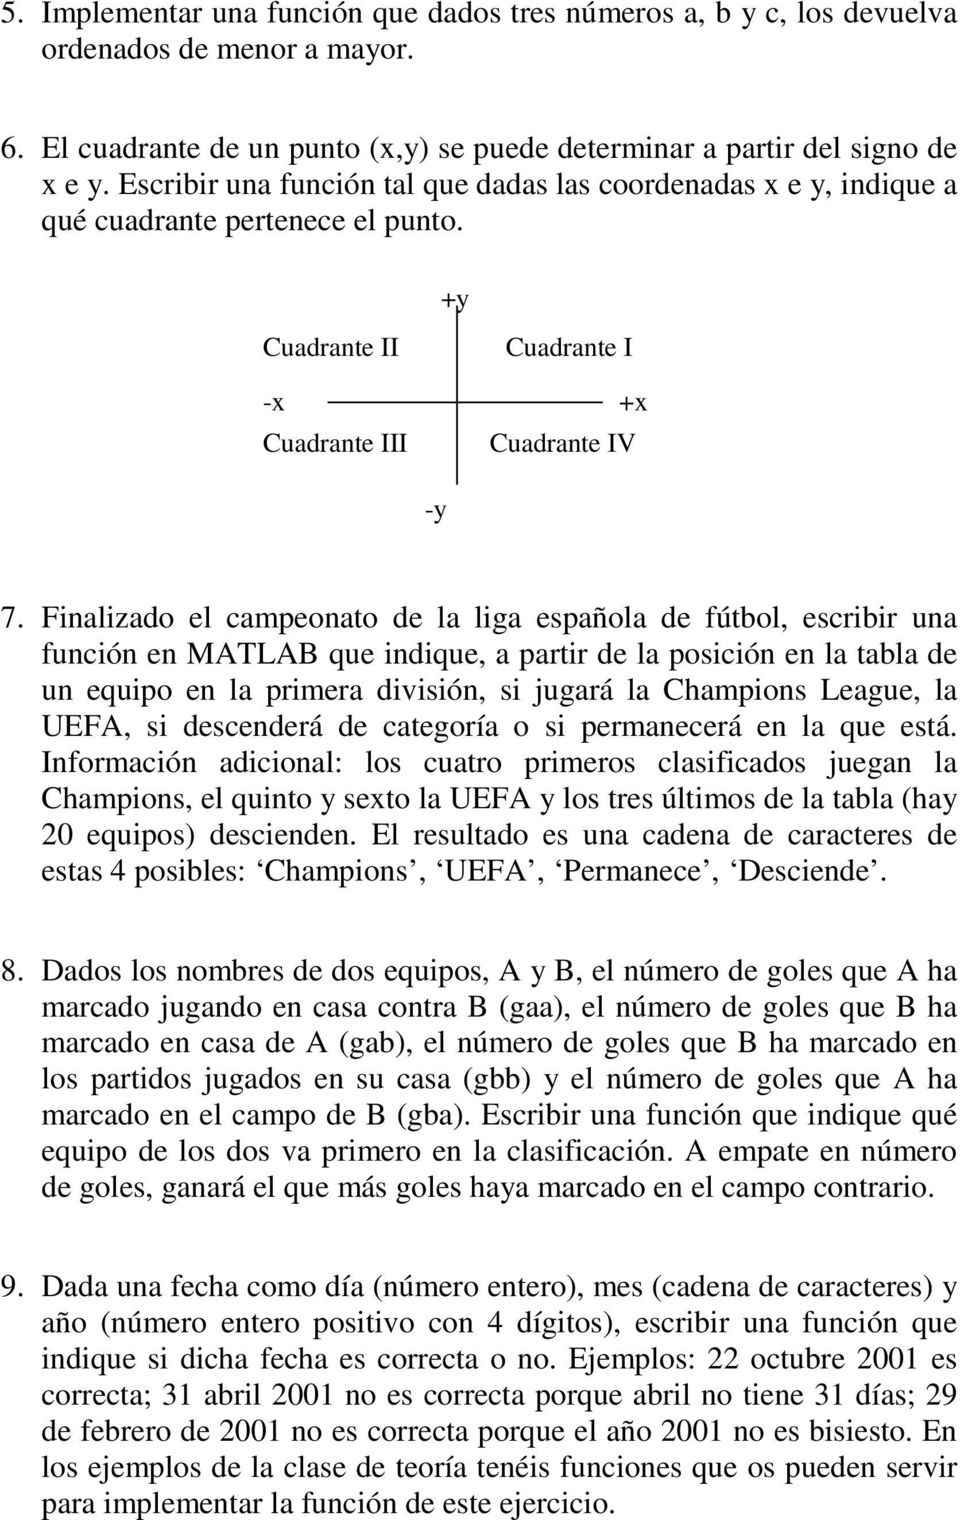 Finalizado el campeonato de la liga española de fútbol, escribir una función en MATLAB que indique, a partir de la posición en la tabla de un equipo en la primera división, si jugará la Champions